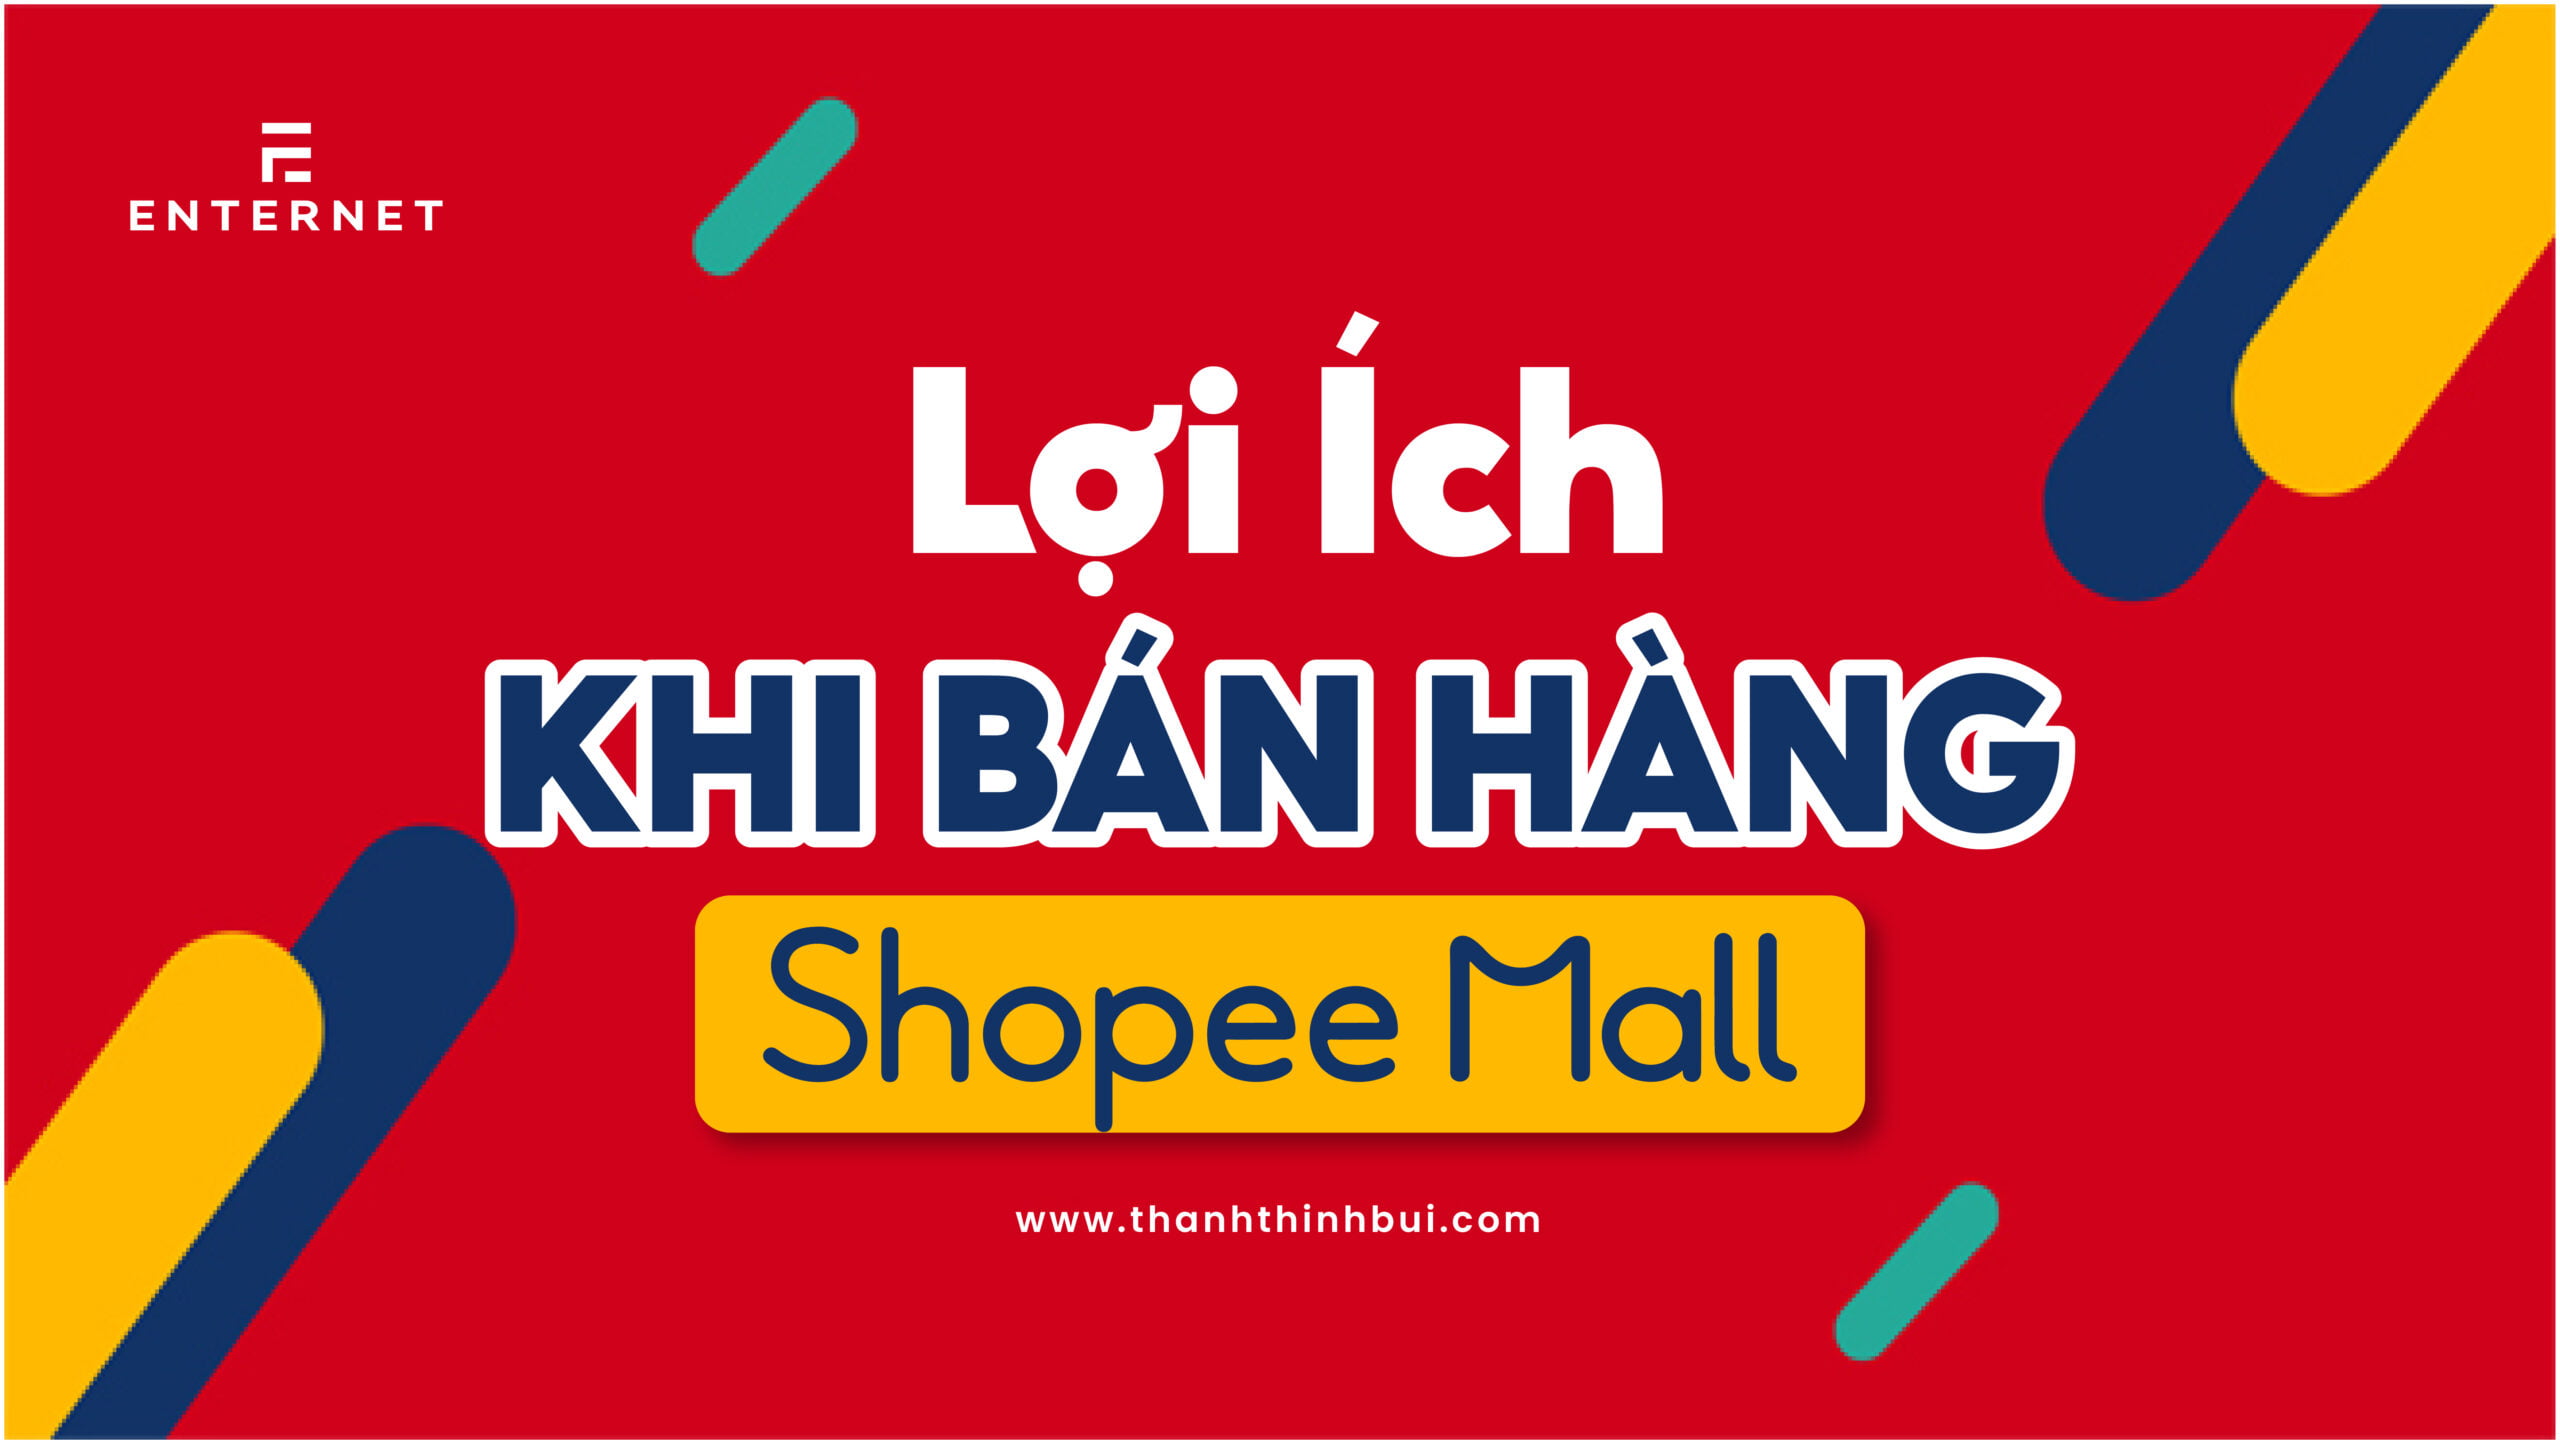 Shopee Mall là gì? Lợi ích khi giao dịch trên Shopee Mall